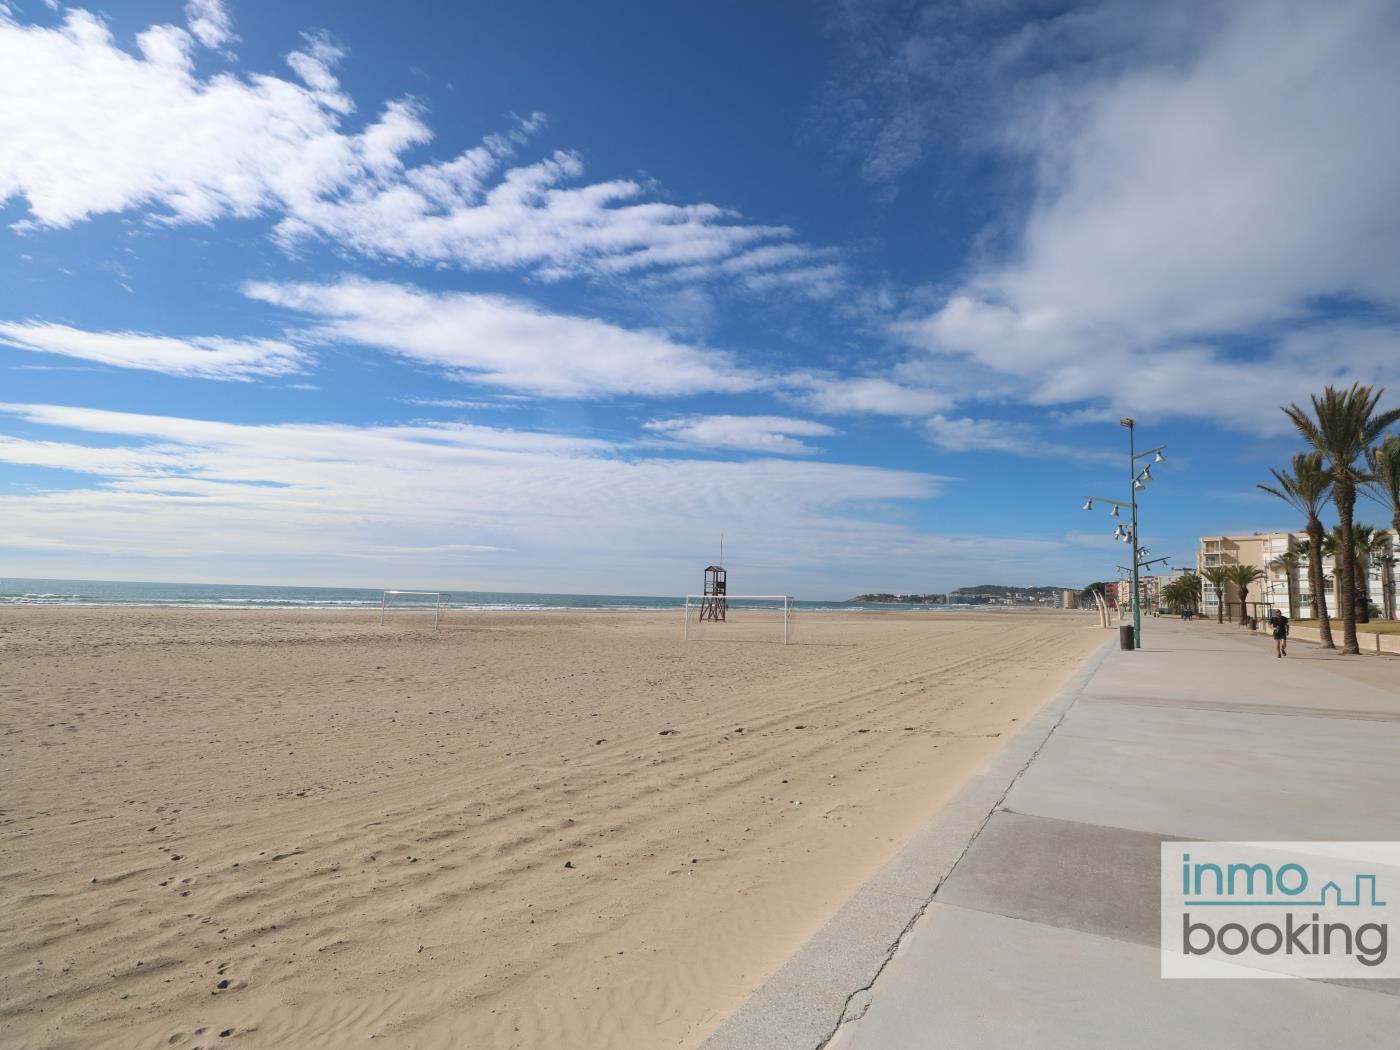 InmoBooking BEACH, climatizado y a 5 minutos a pie de la playa- en La Pineda